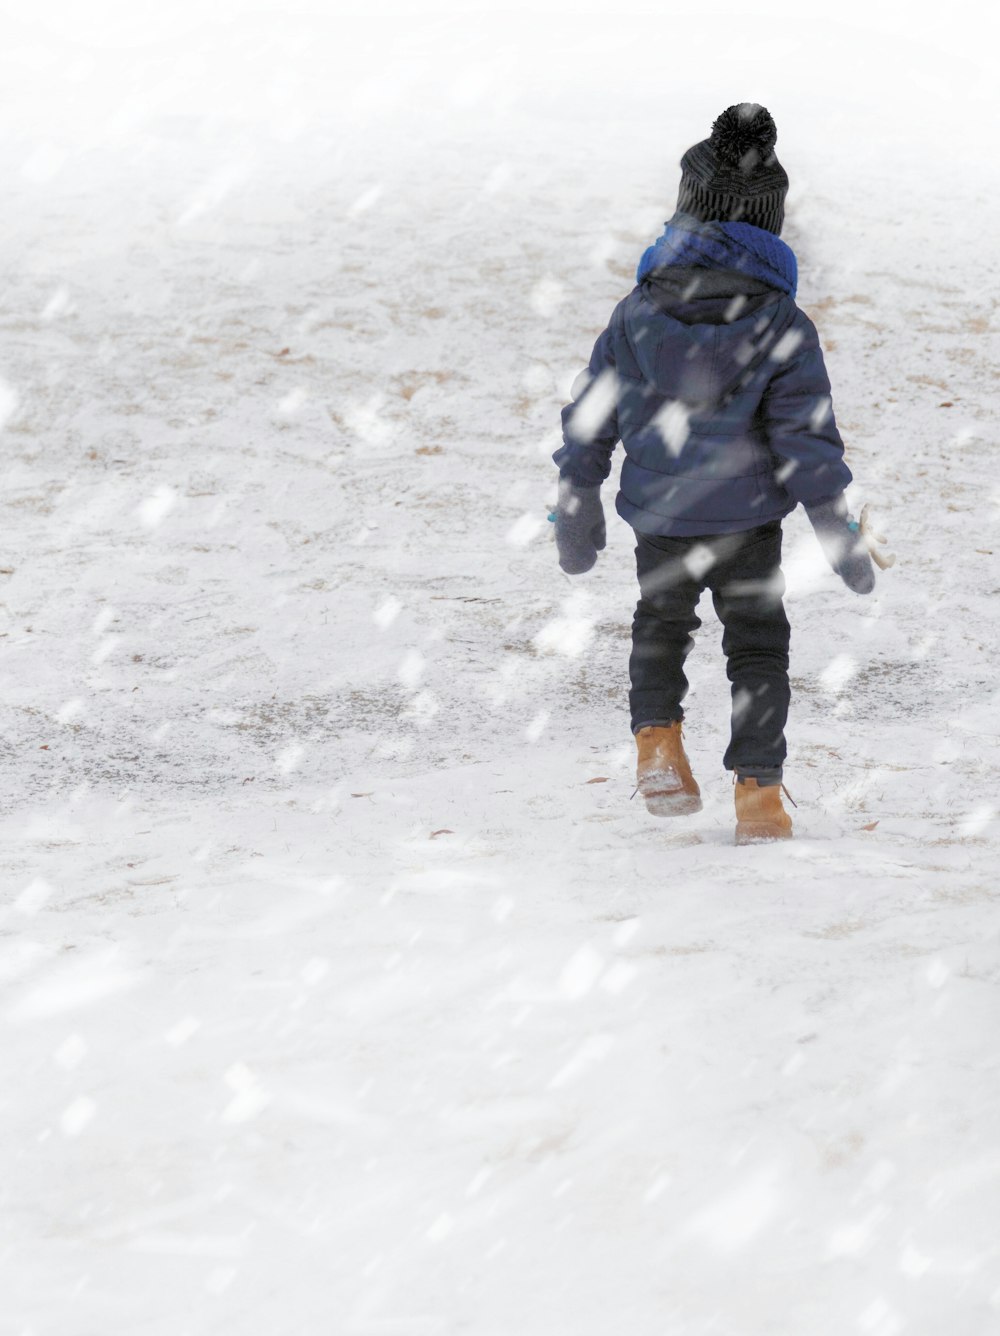 푸른 코트를 입은 아이가 눈밭을 걷고 있다.